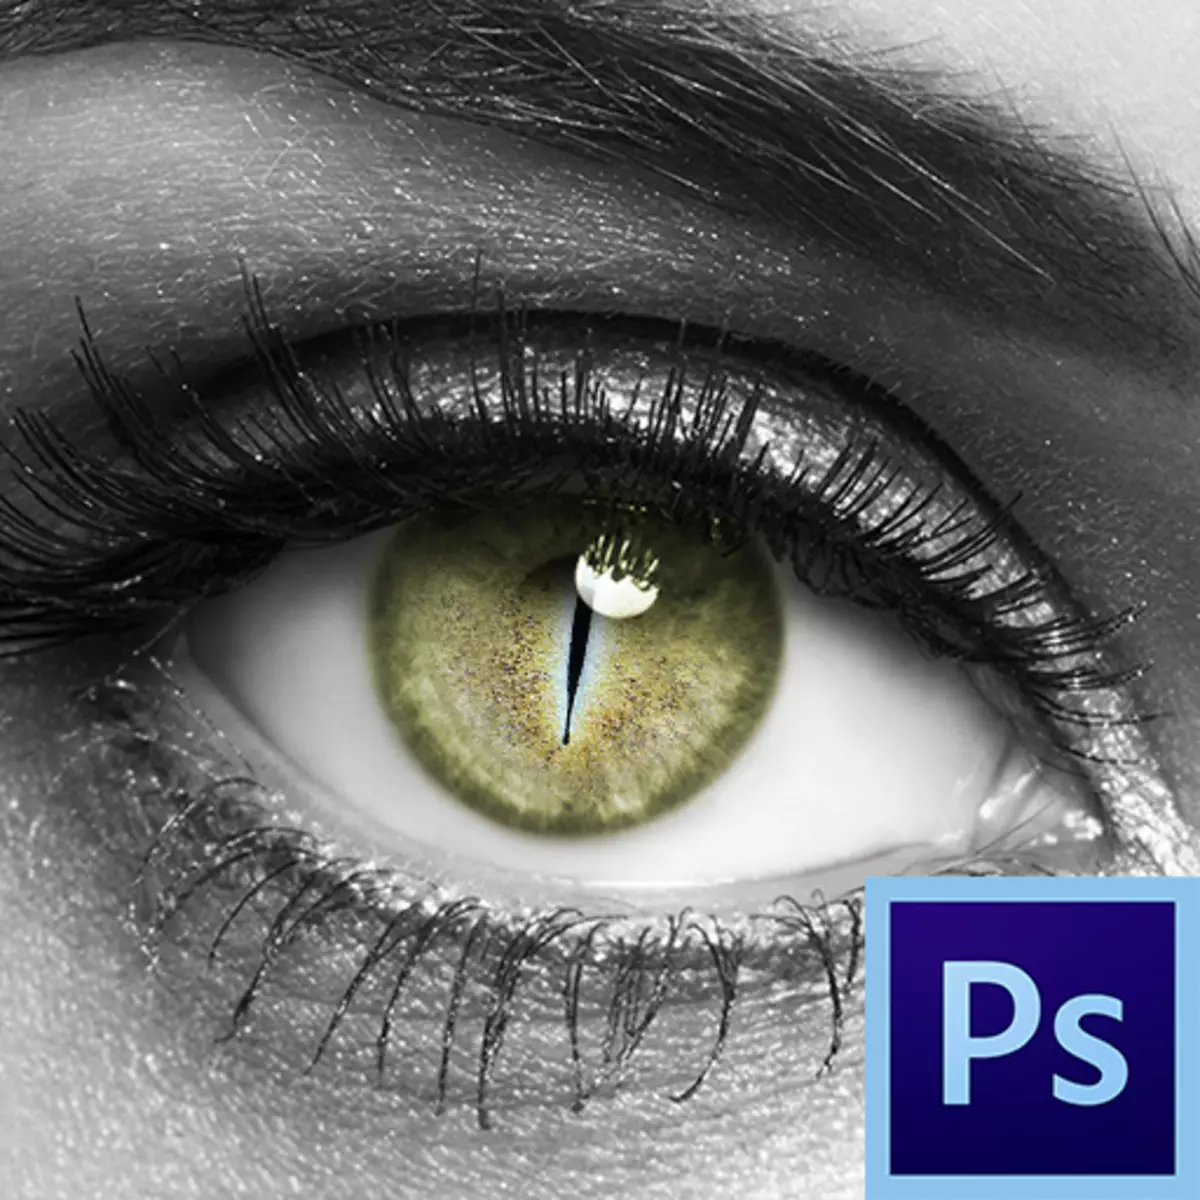 Augenverarbeitung in Photoshop